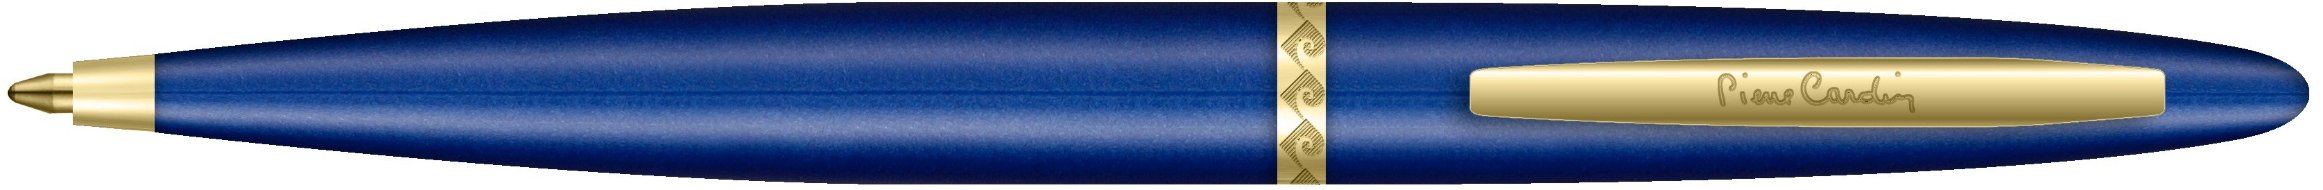 Ручка шариковая Pierre Cardin Capre, синяя, позолота